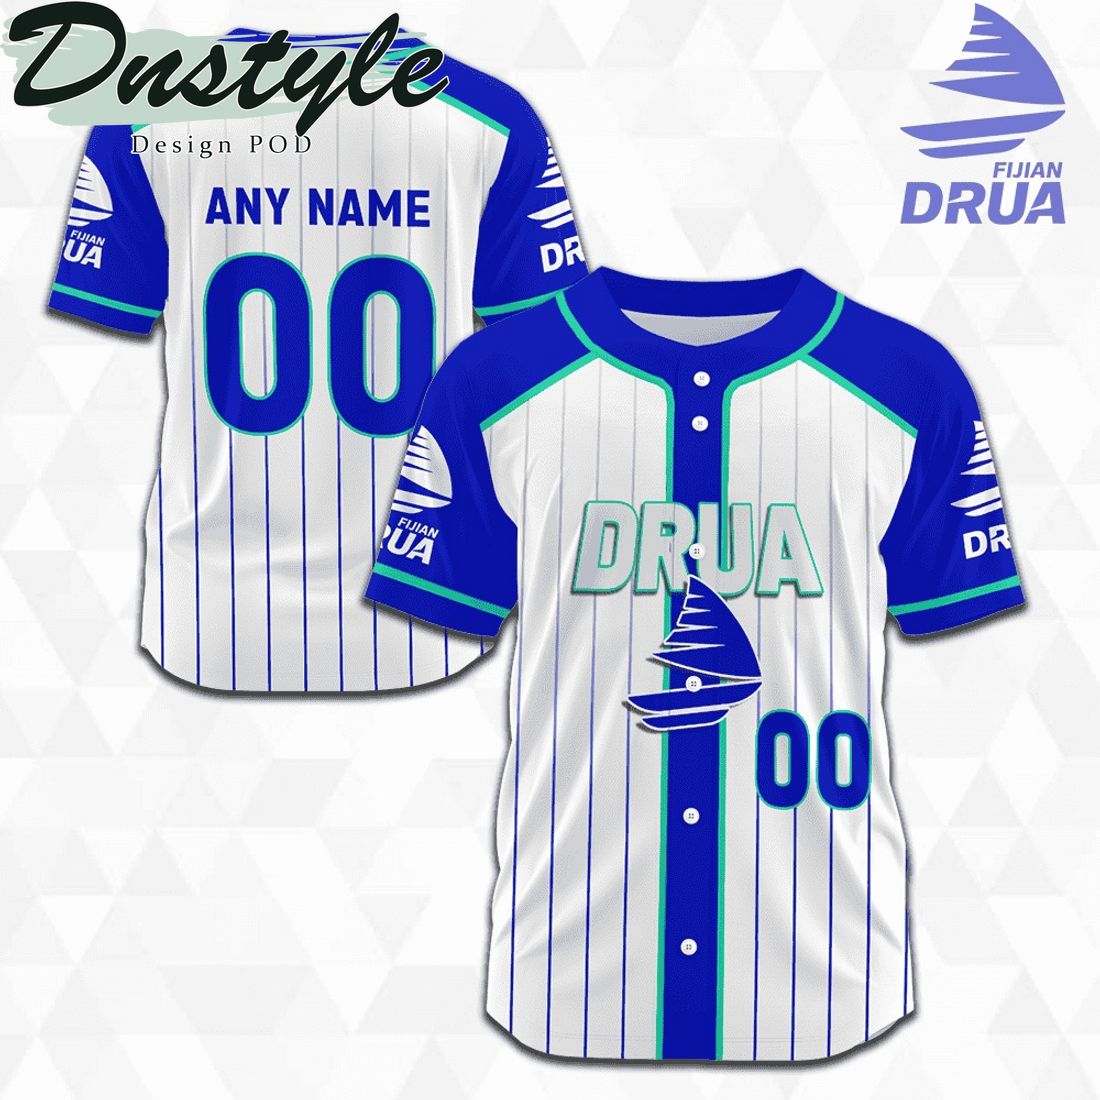 Fijian Drua 2023 Season Personalized Baseball Jersey